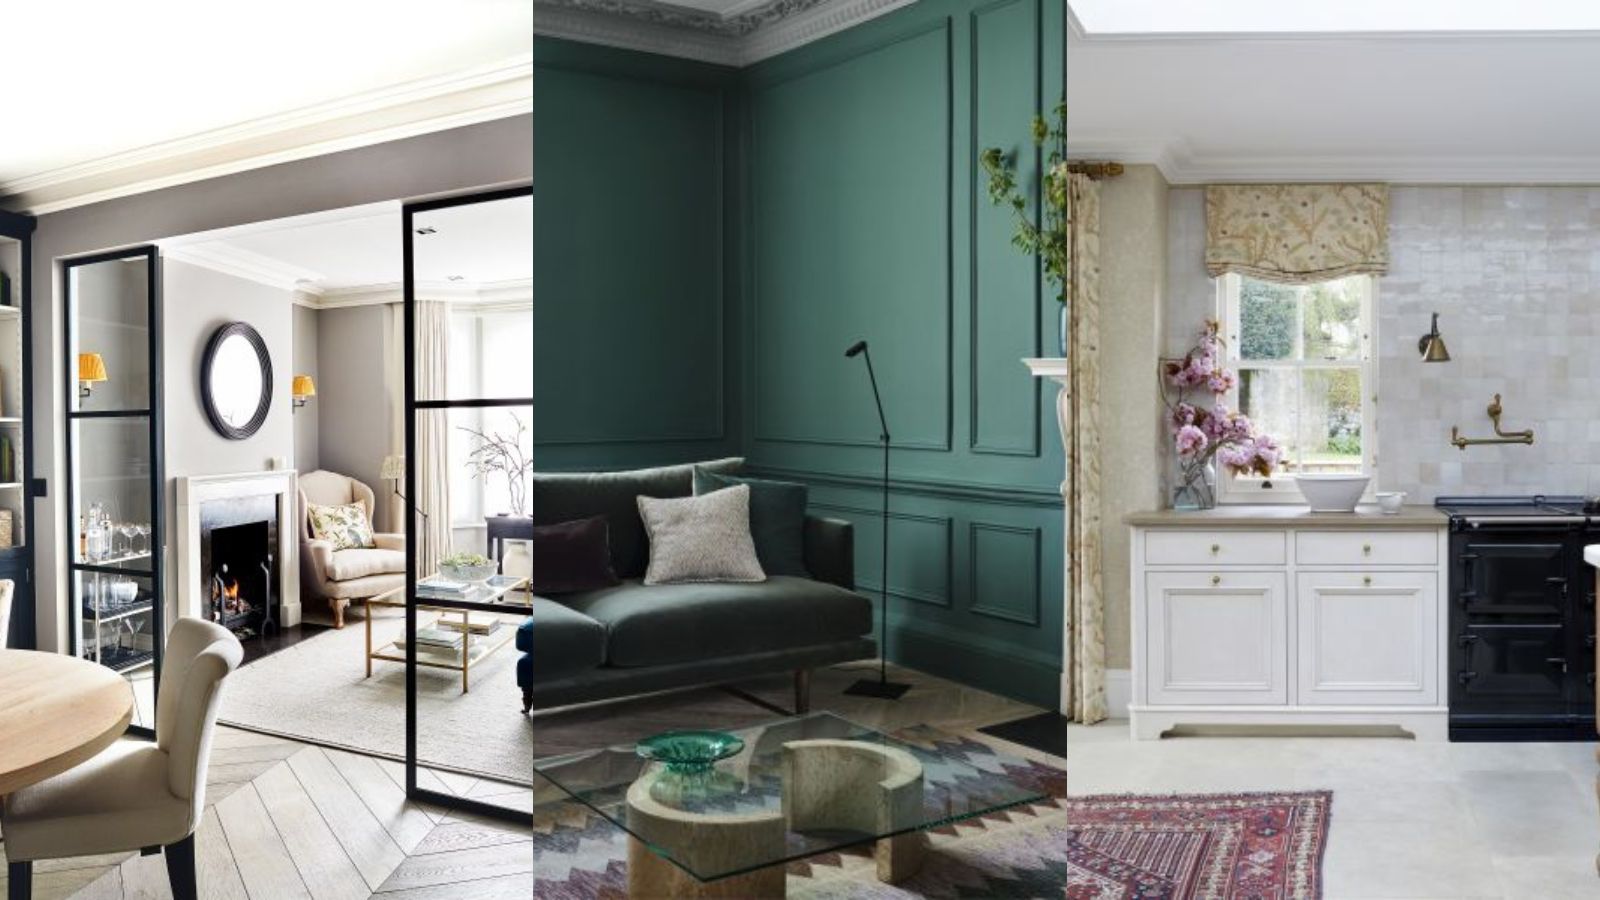 Classic Chic Interior Design: Furniture & Decorating Ideas